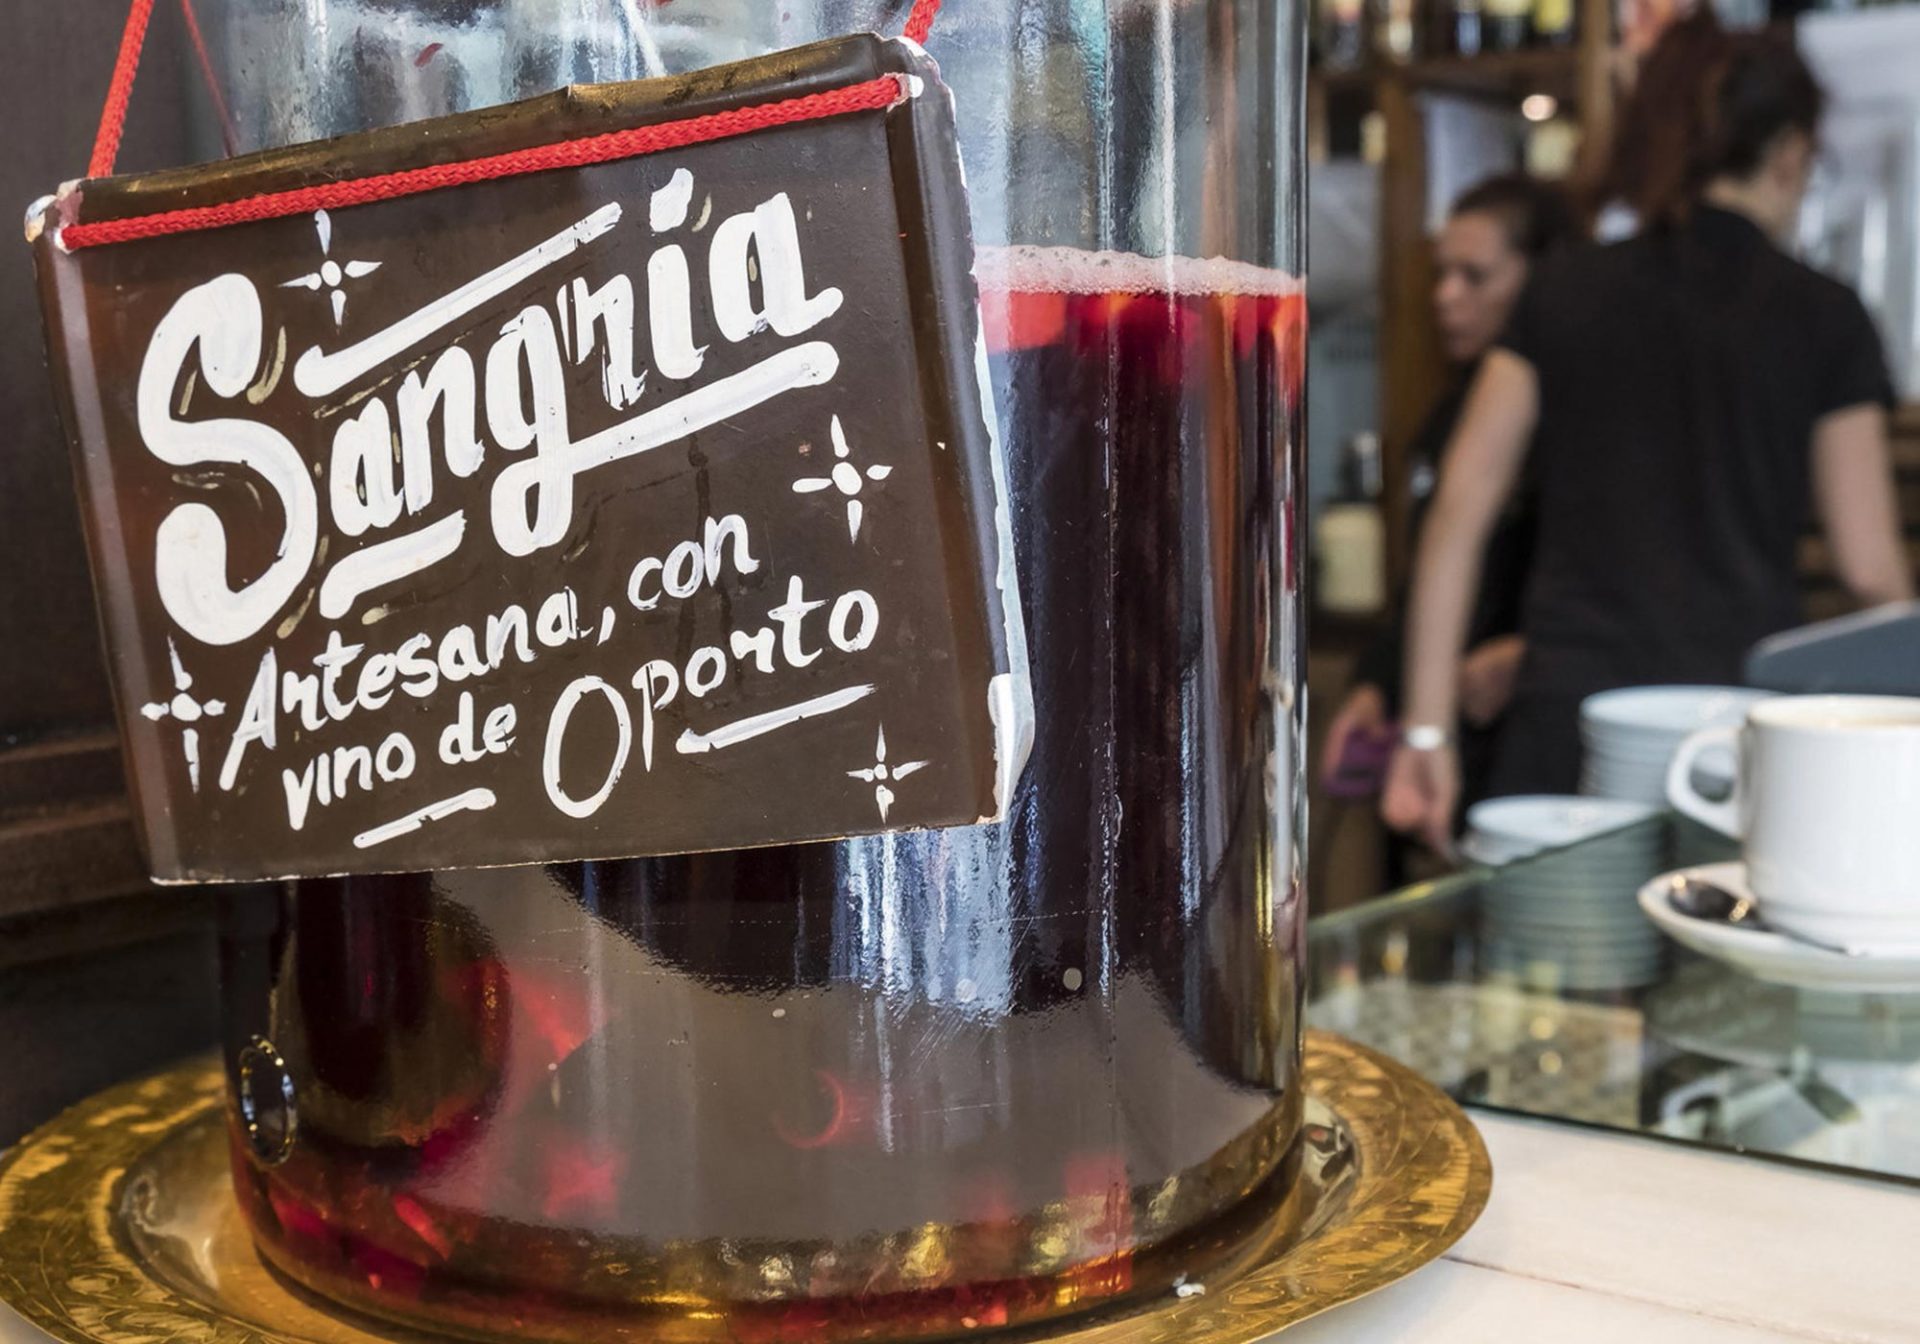 Sangria, tradycyjny hiszpański napój